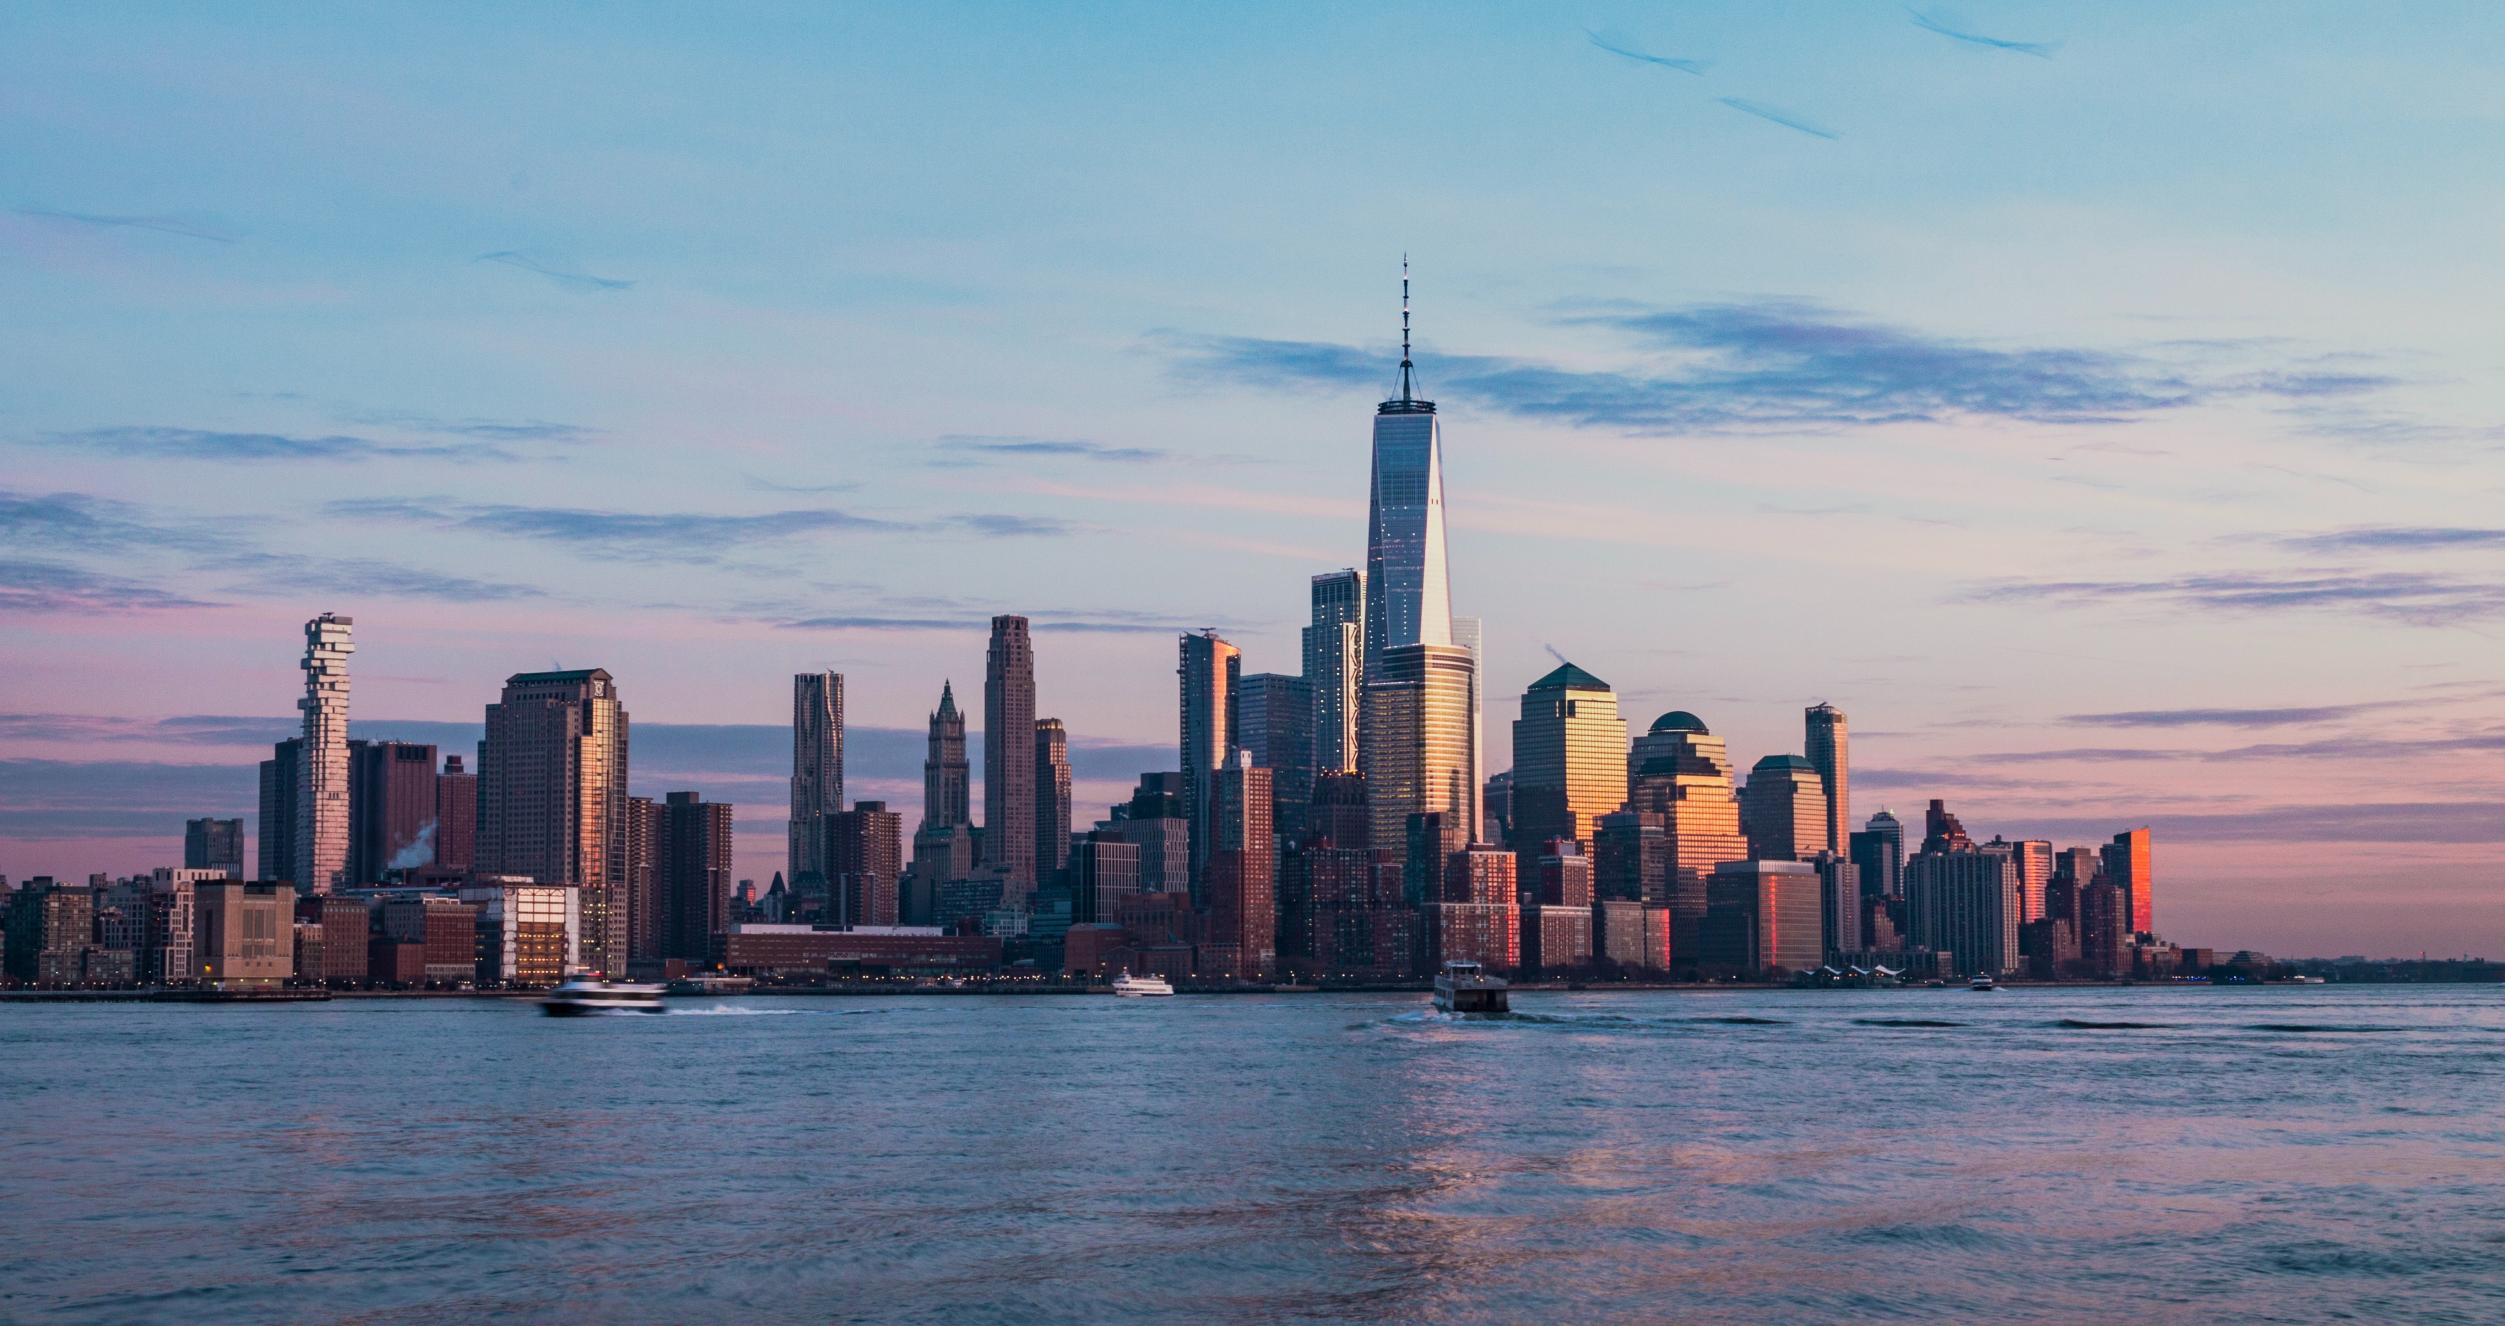 New York City skyline and surrounding water